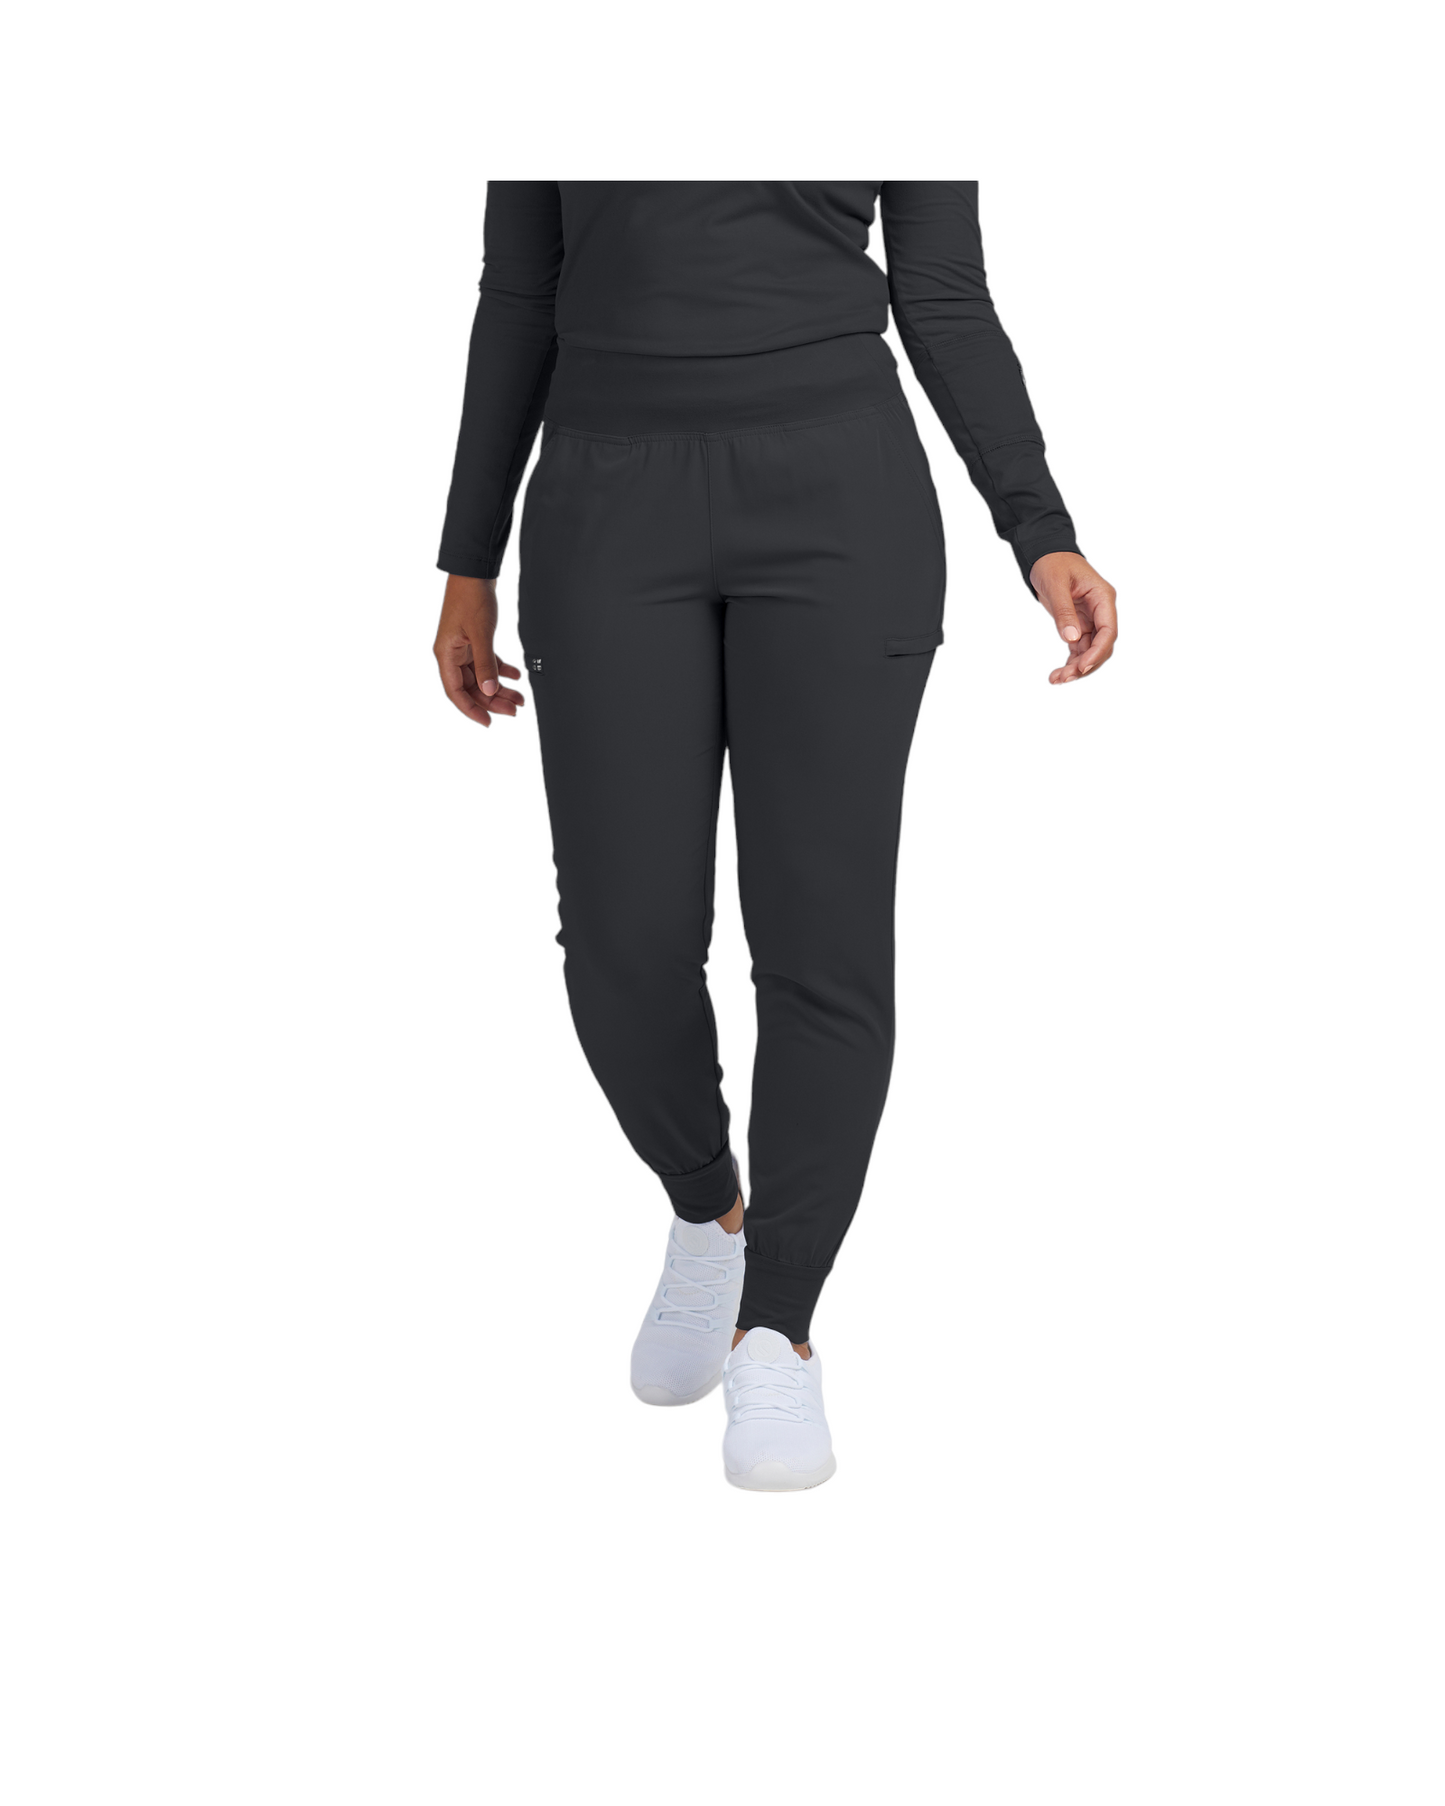 Pantalon jogger pour femme 6 poches White Cross CRFT #WB430 OS couleur Pewter